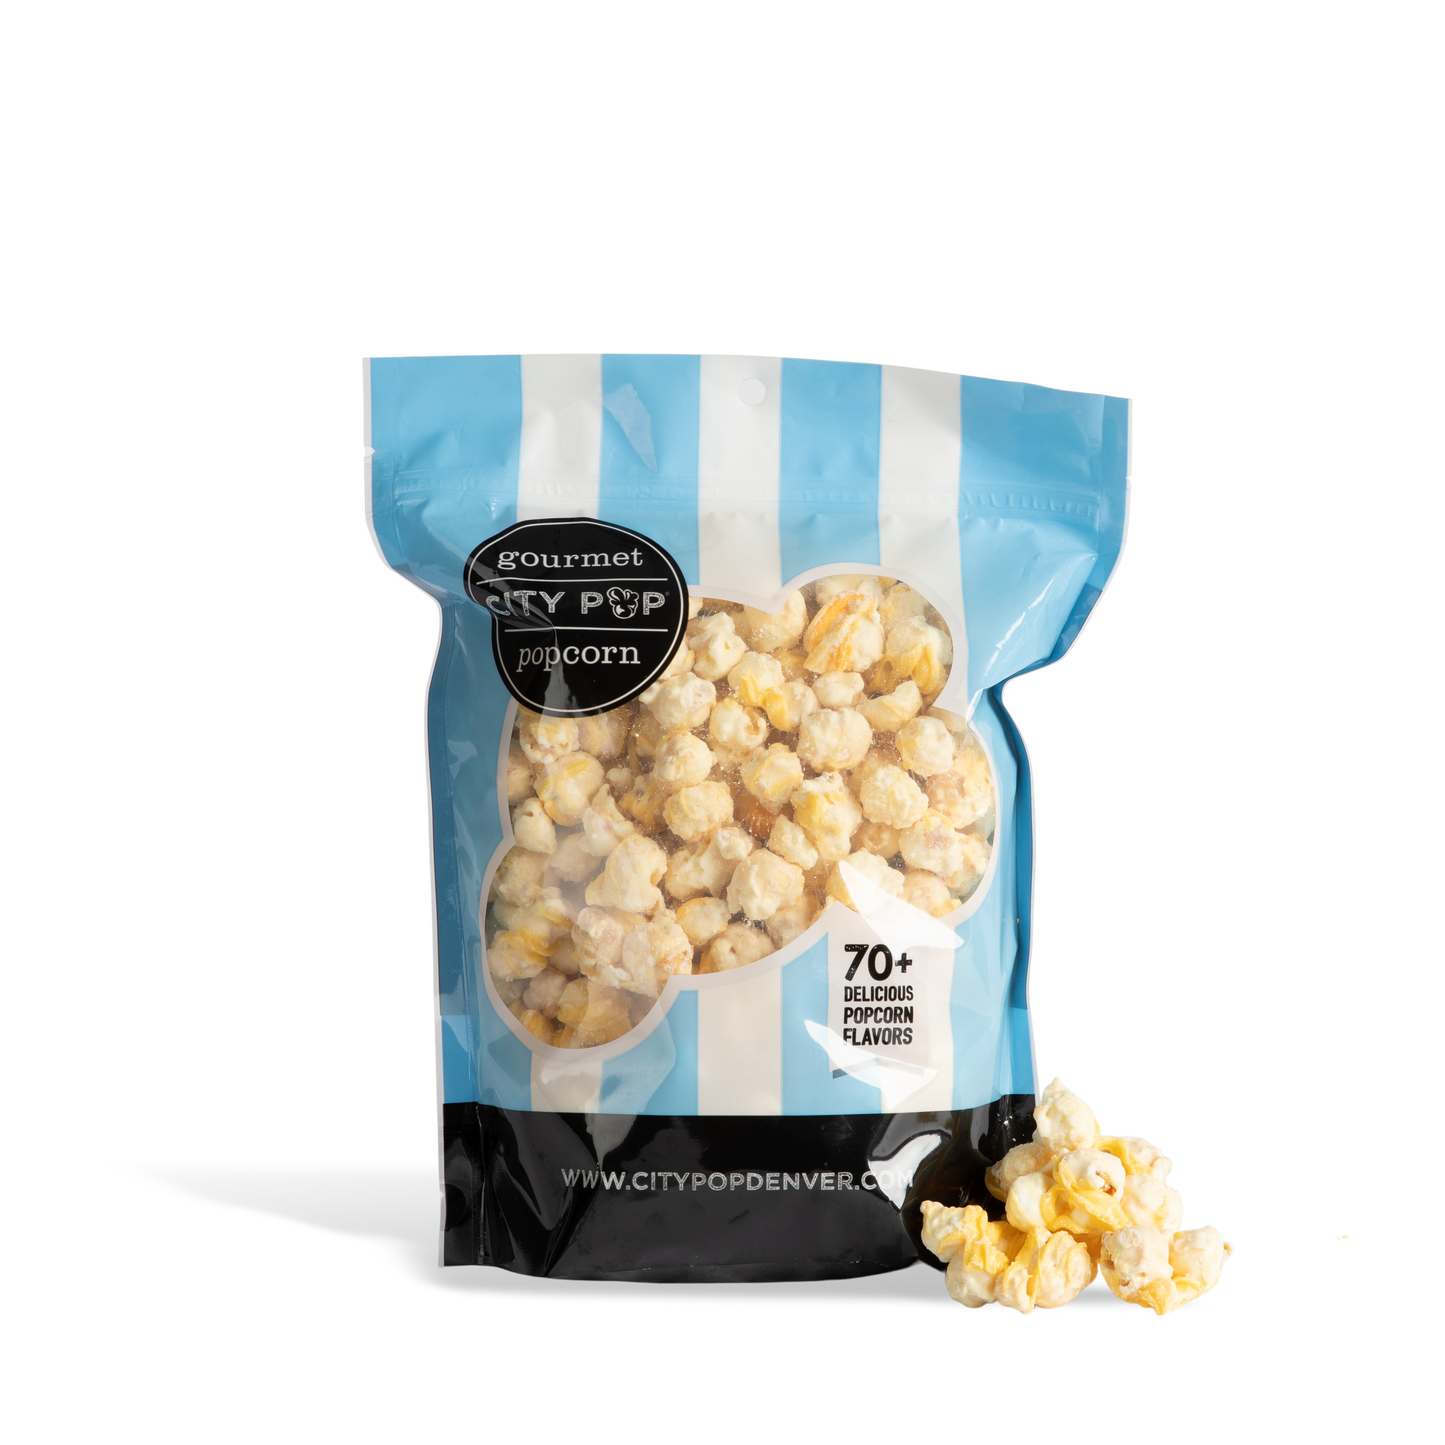 City Pop Lemon Bar Popcorn Bag With Kernel